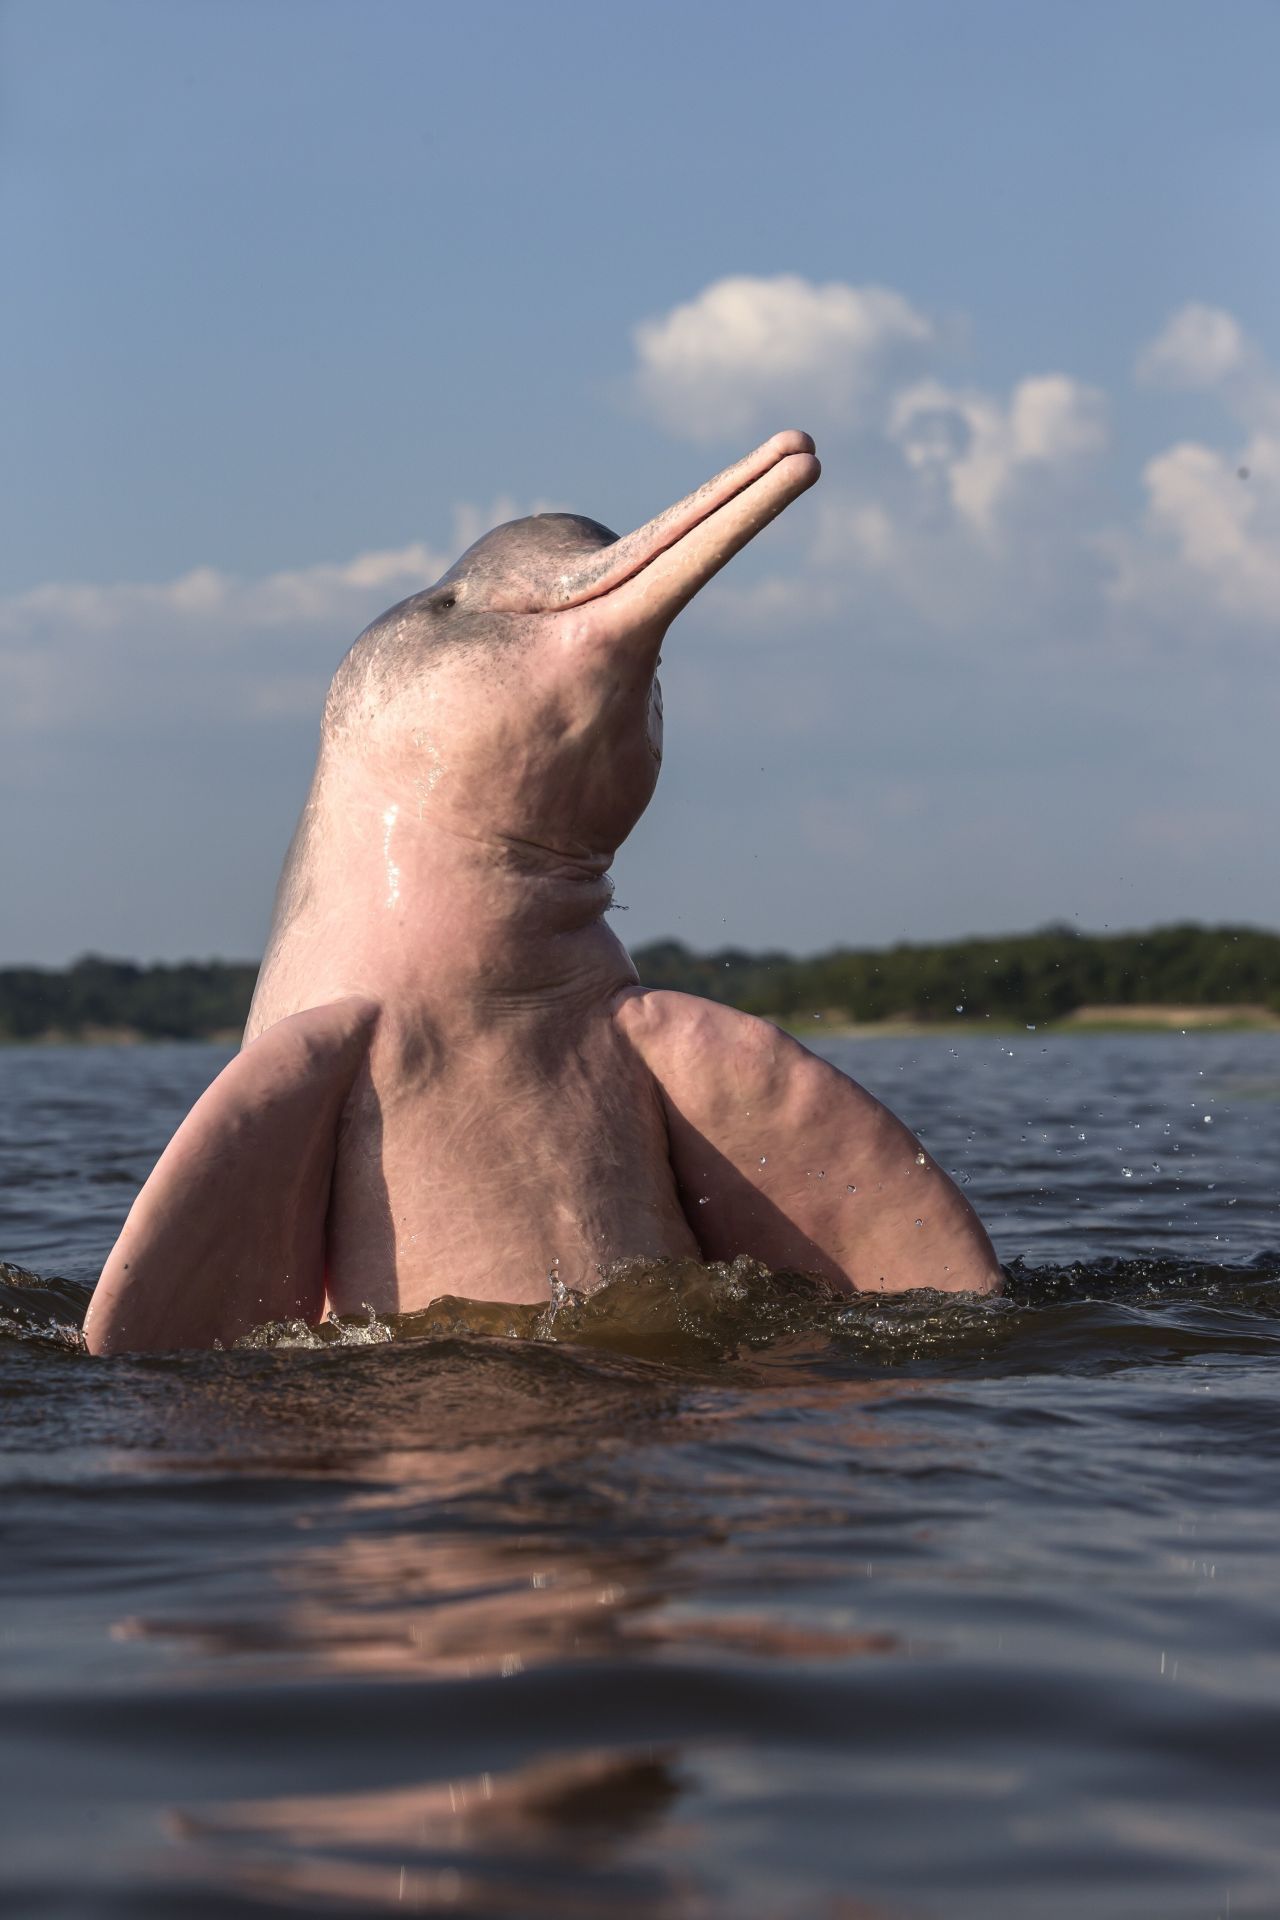 Auch der Amazonas-Flussdelfin, genannt "Boto", ist eine besondere und sehr seltene Delfinart. Nicht nur, dass er im Süßwasser und im Fluss lebt - er ist auch noch rosa und so gut wie blind.